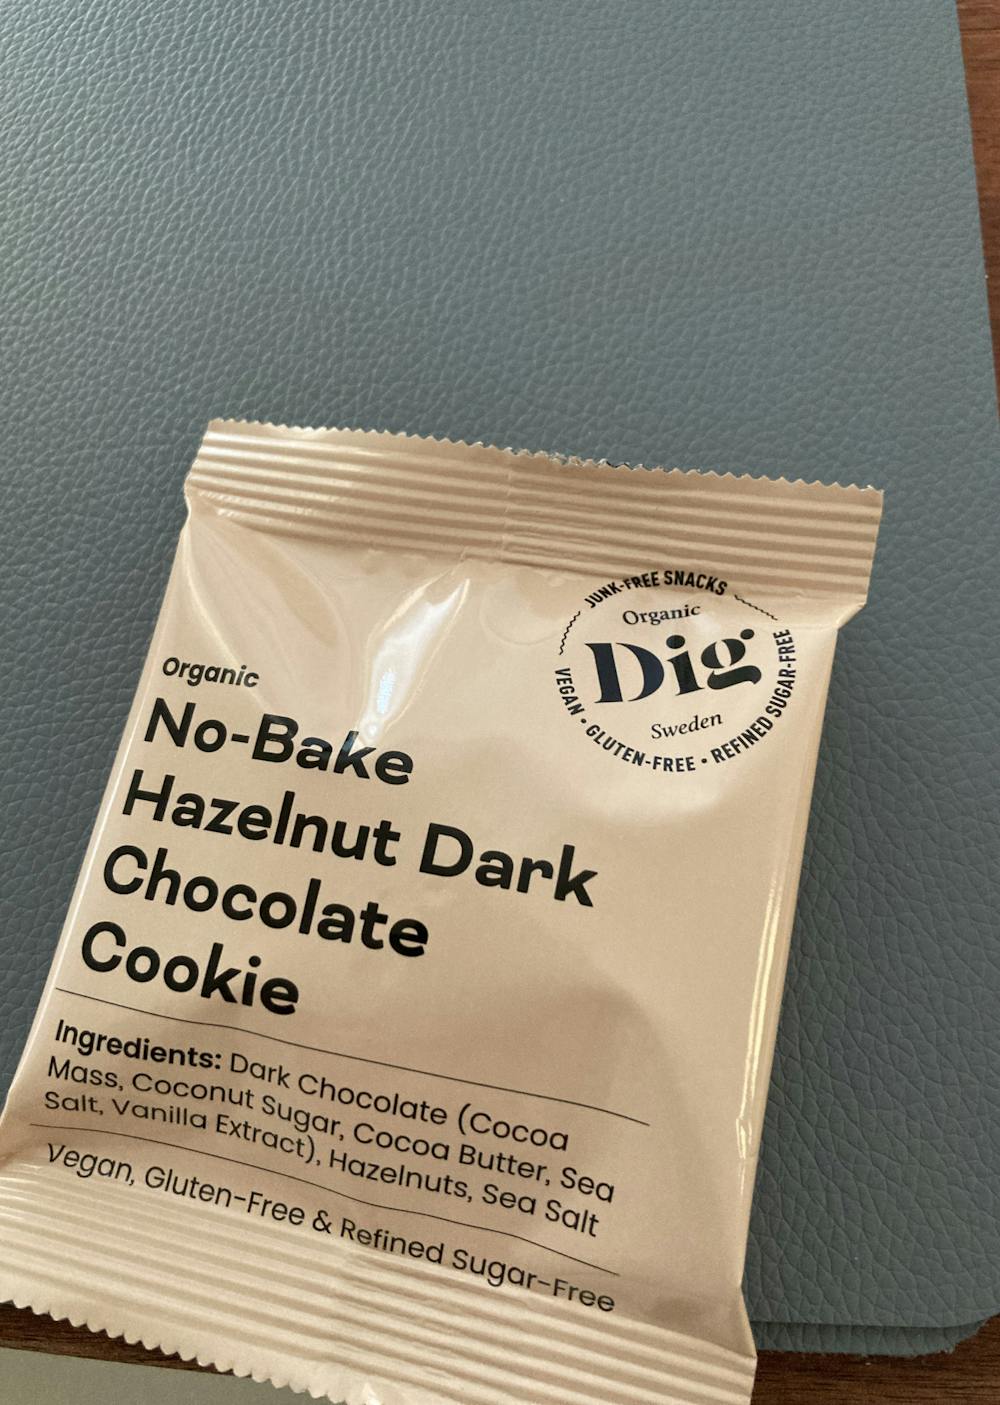 No-Bake Hazelnut Dark Chocolate Cookie, Dig